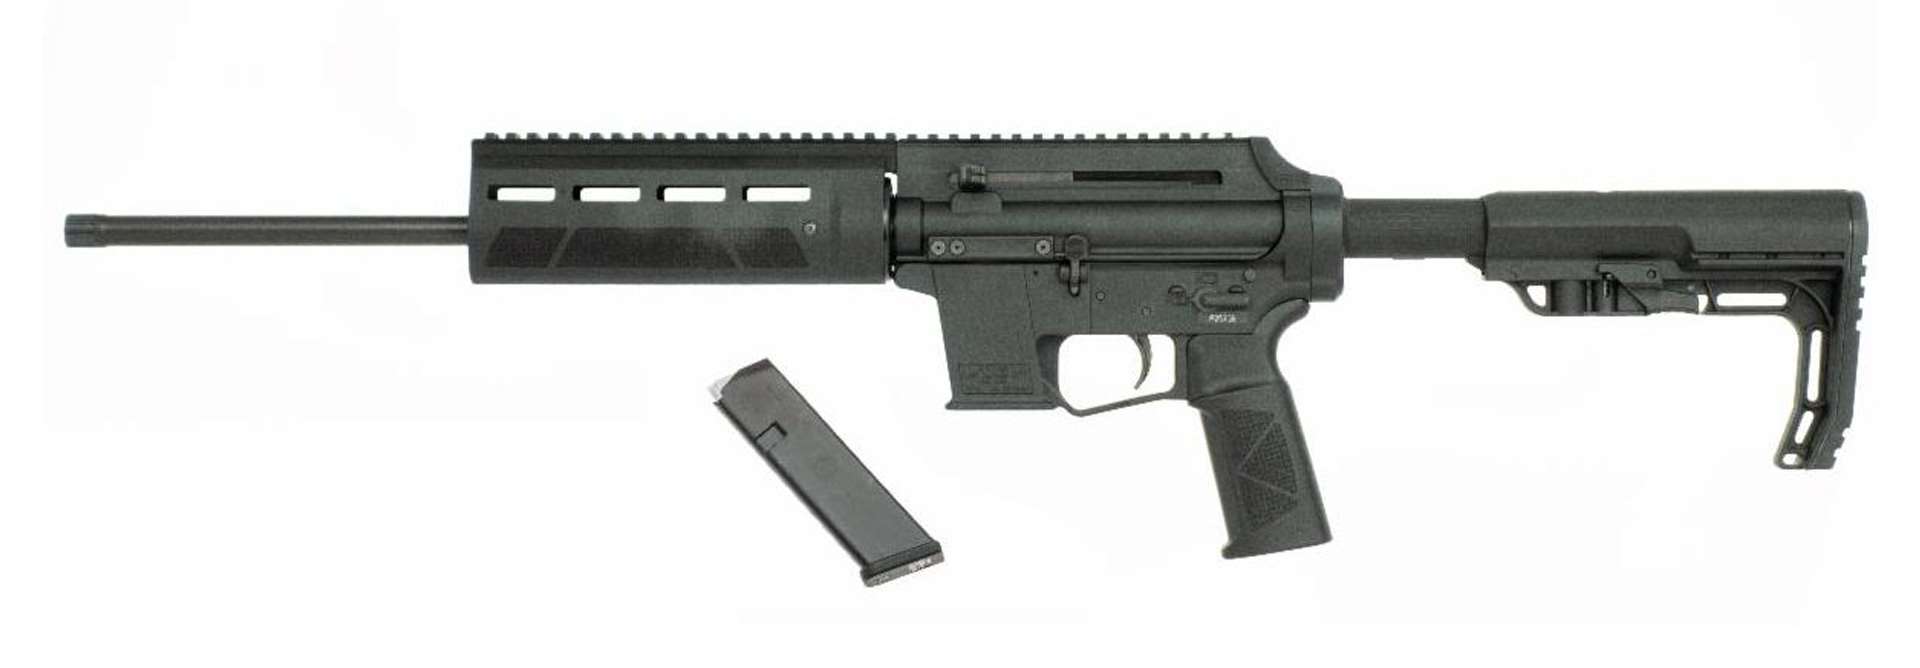 Extar USA EP9 carbine